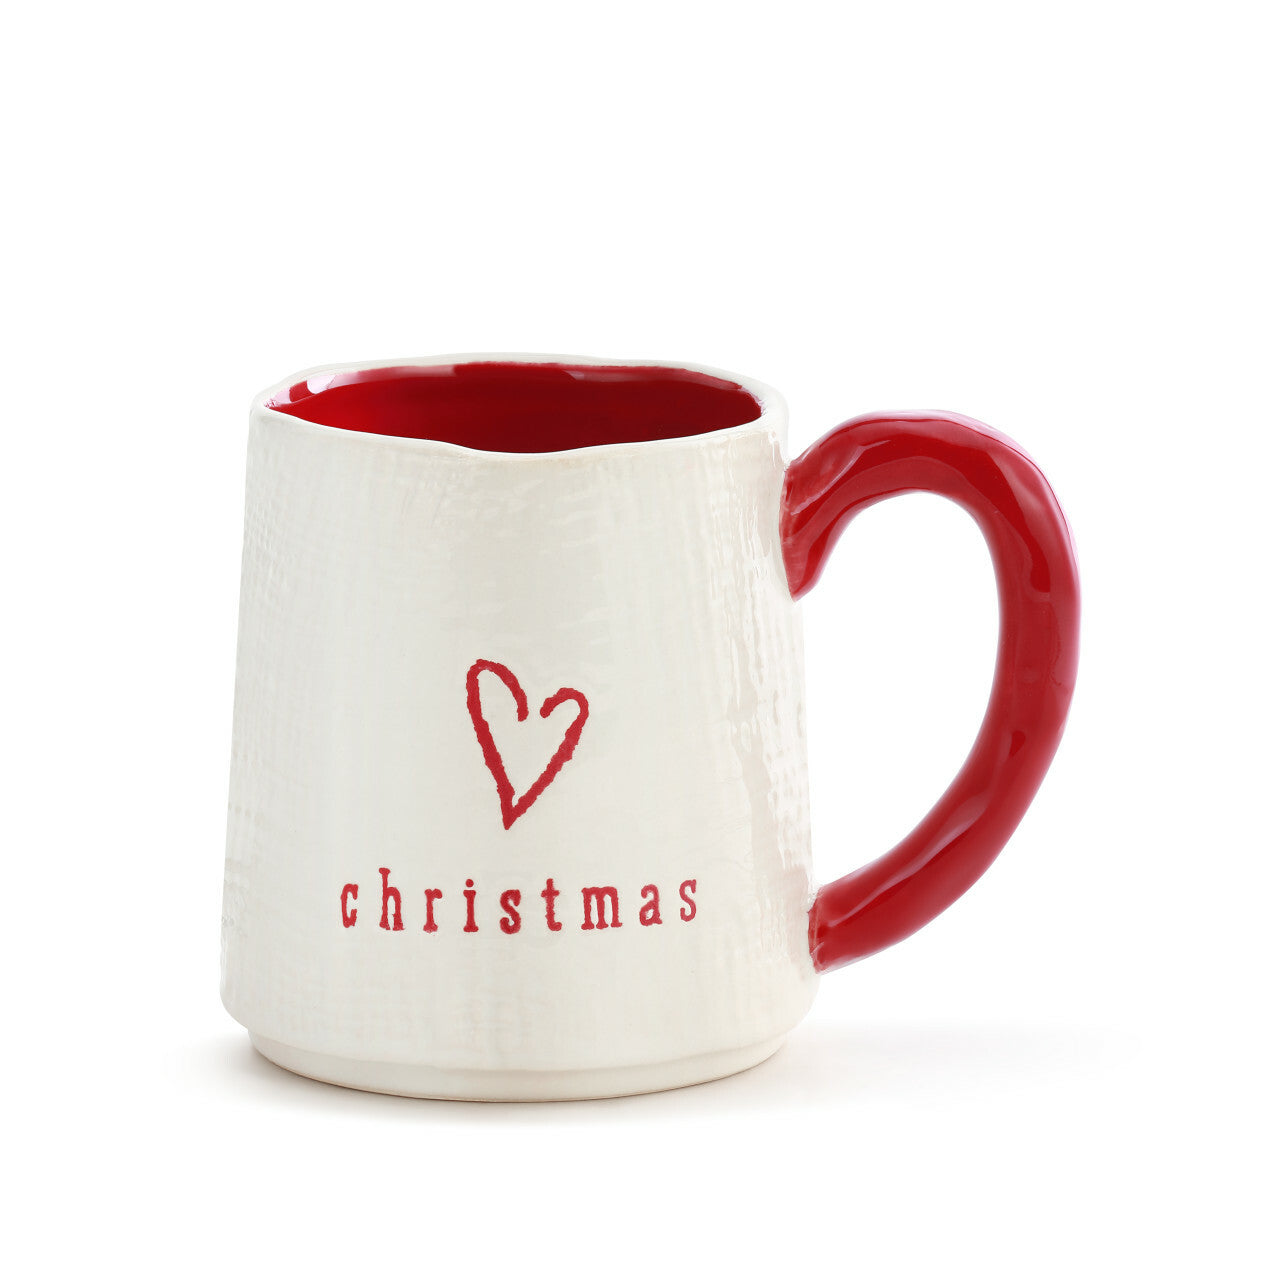 Christmas Love Mug | Red And White Coffee Mug